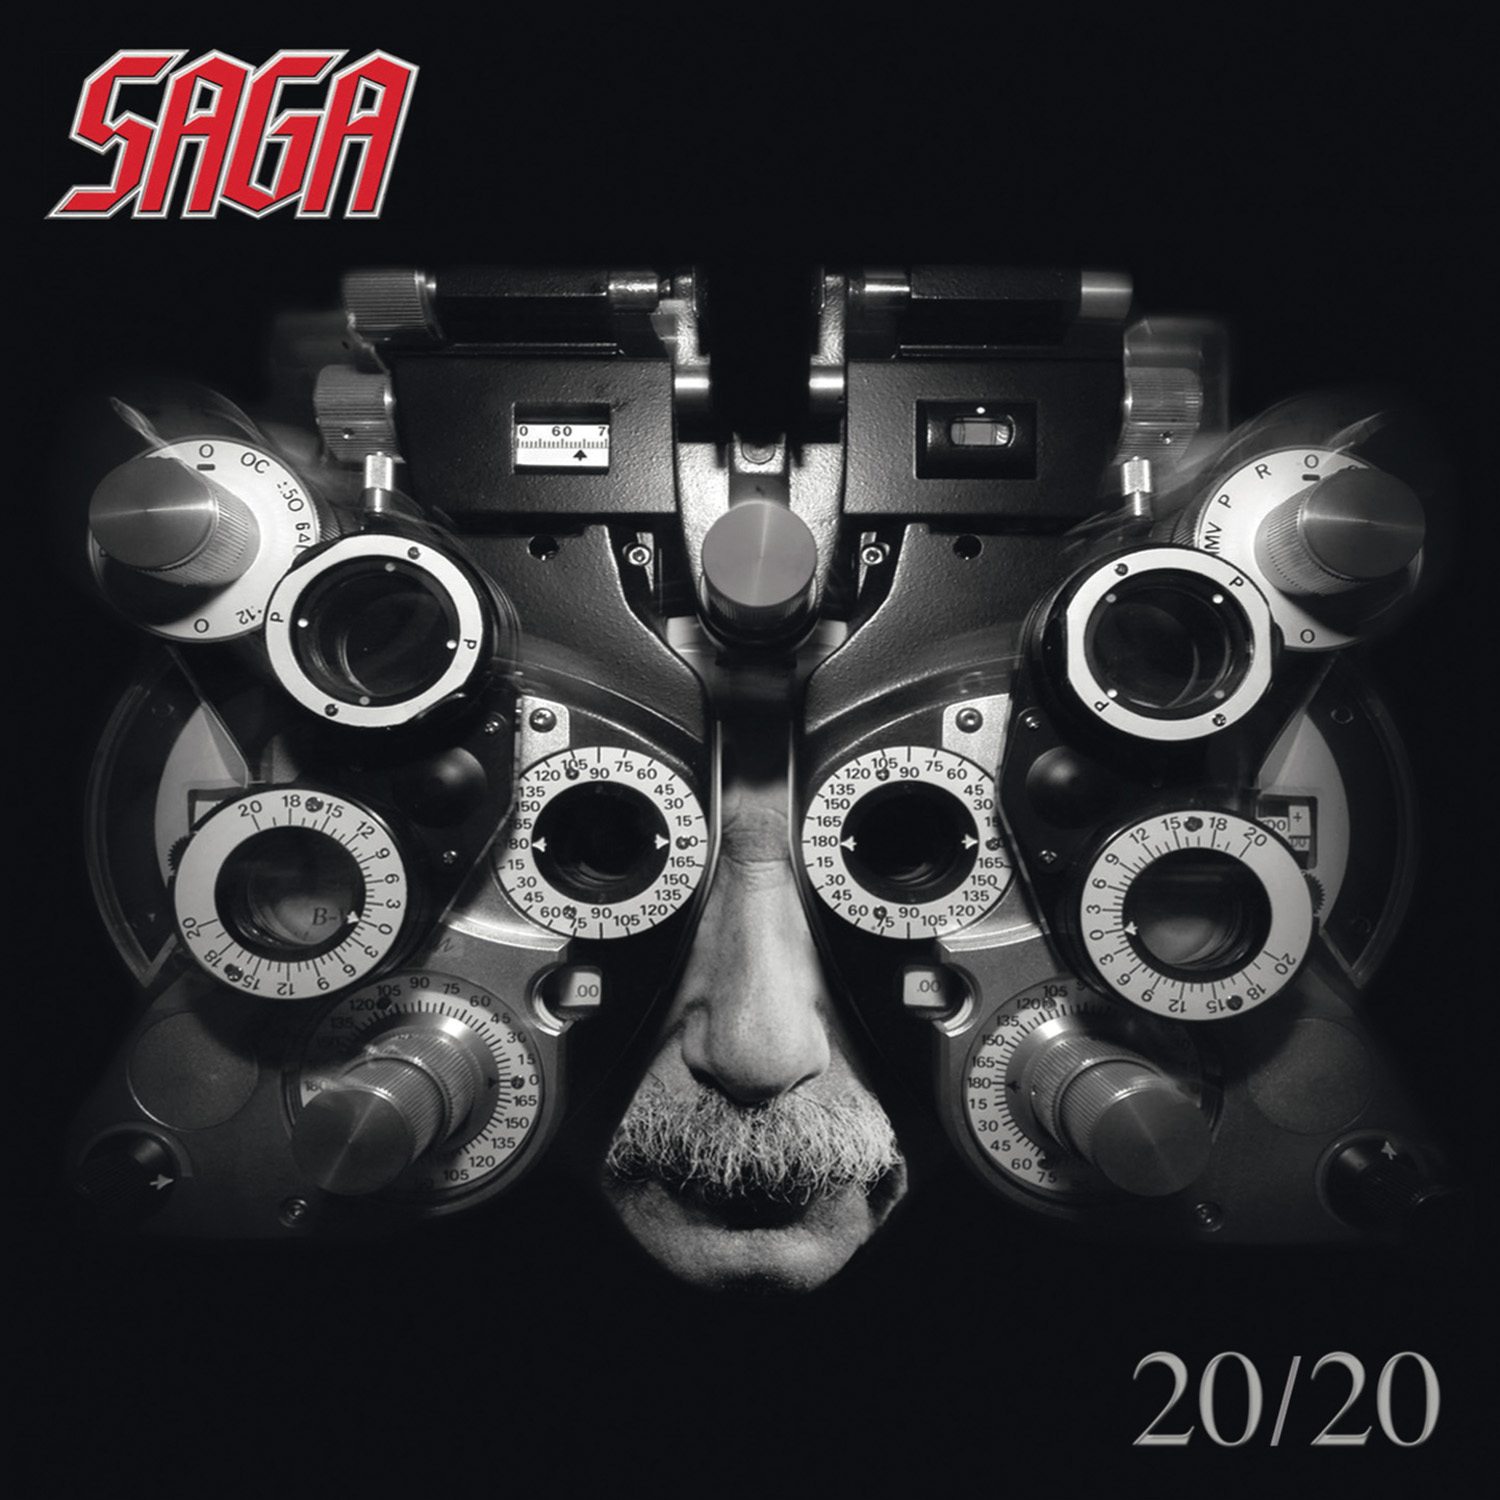 saga2020CD.jpg